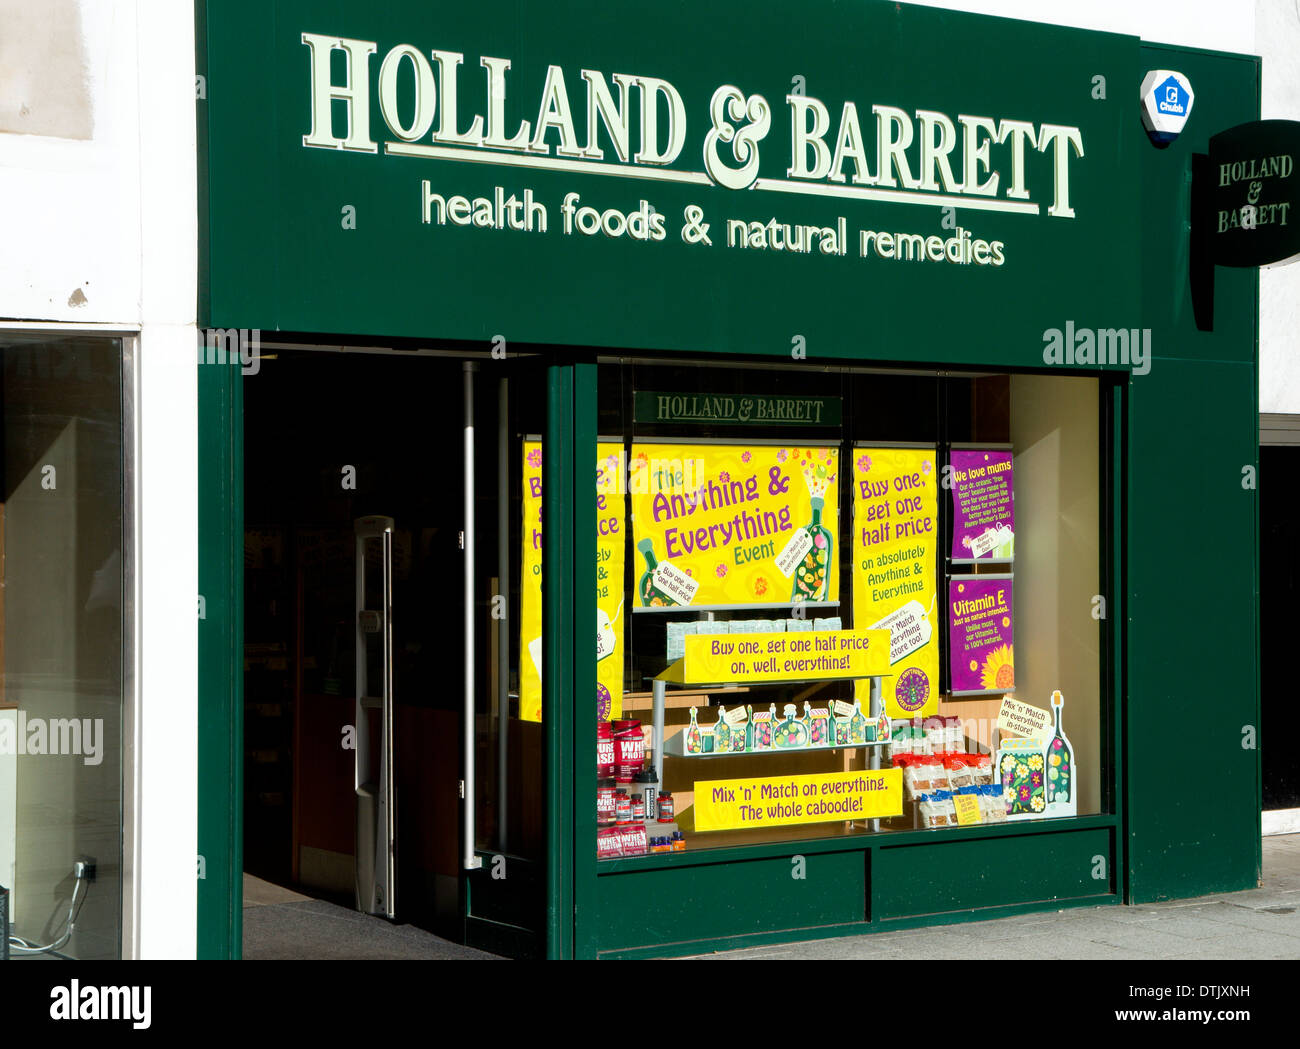 La Hollande et Barrett nourriture santé shop, Queen Street, Cardiff, Pays de Galles. Banque D'Images